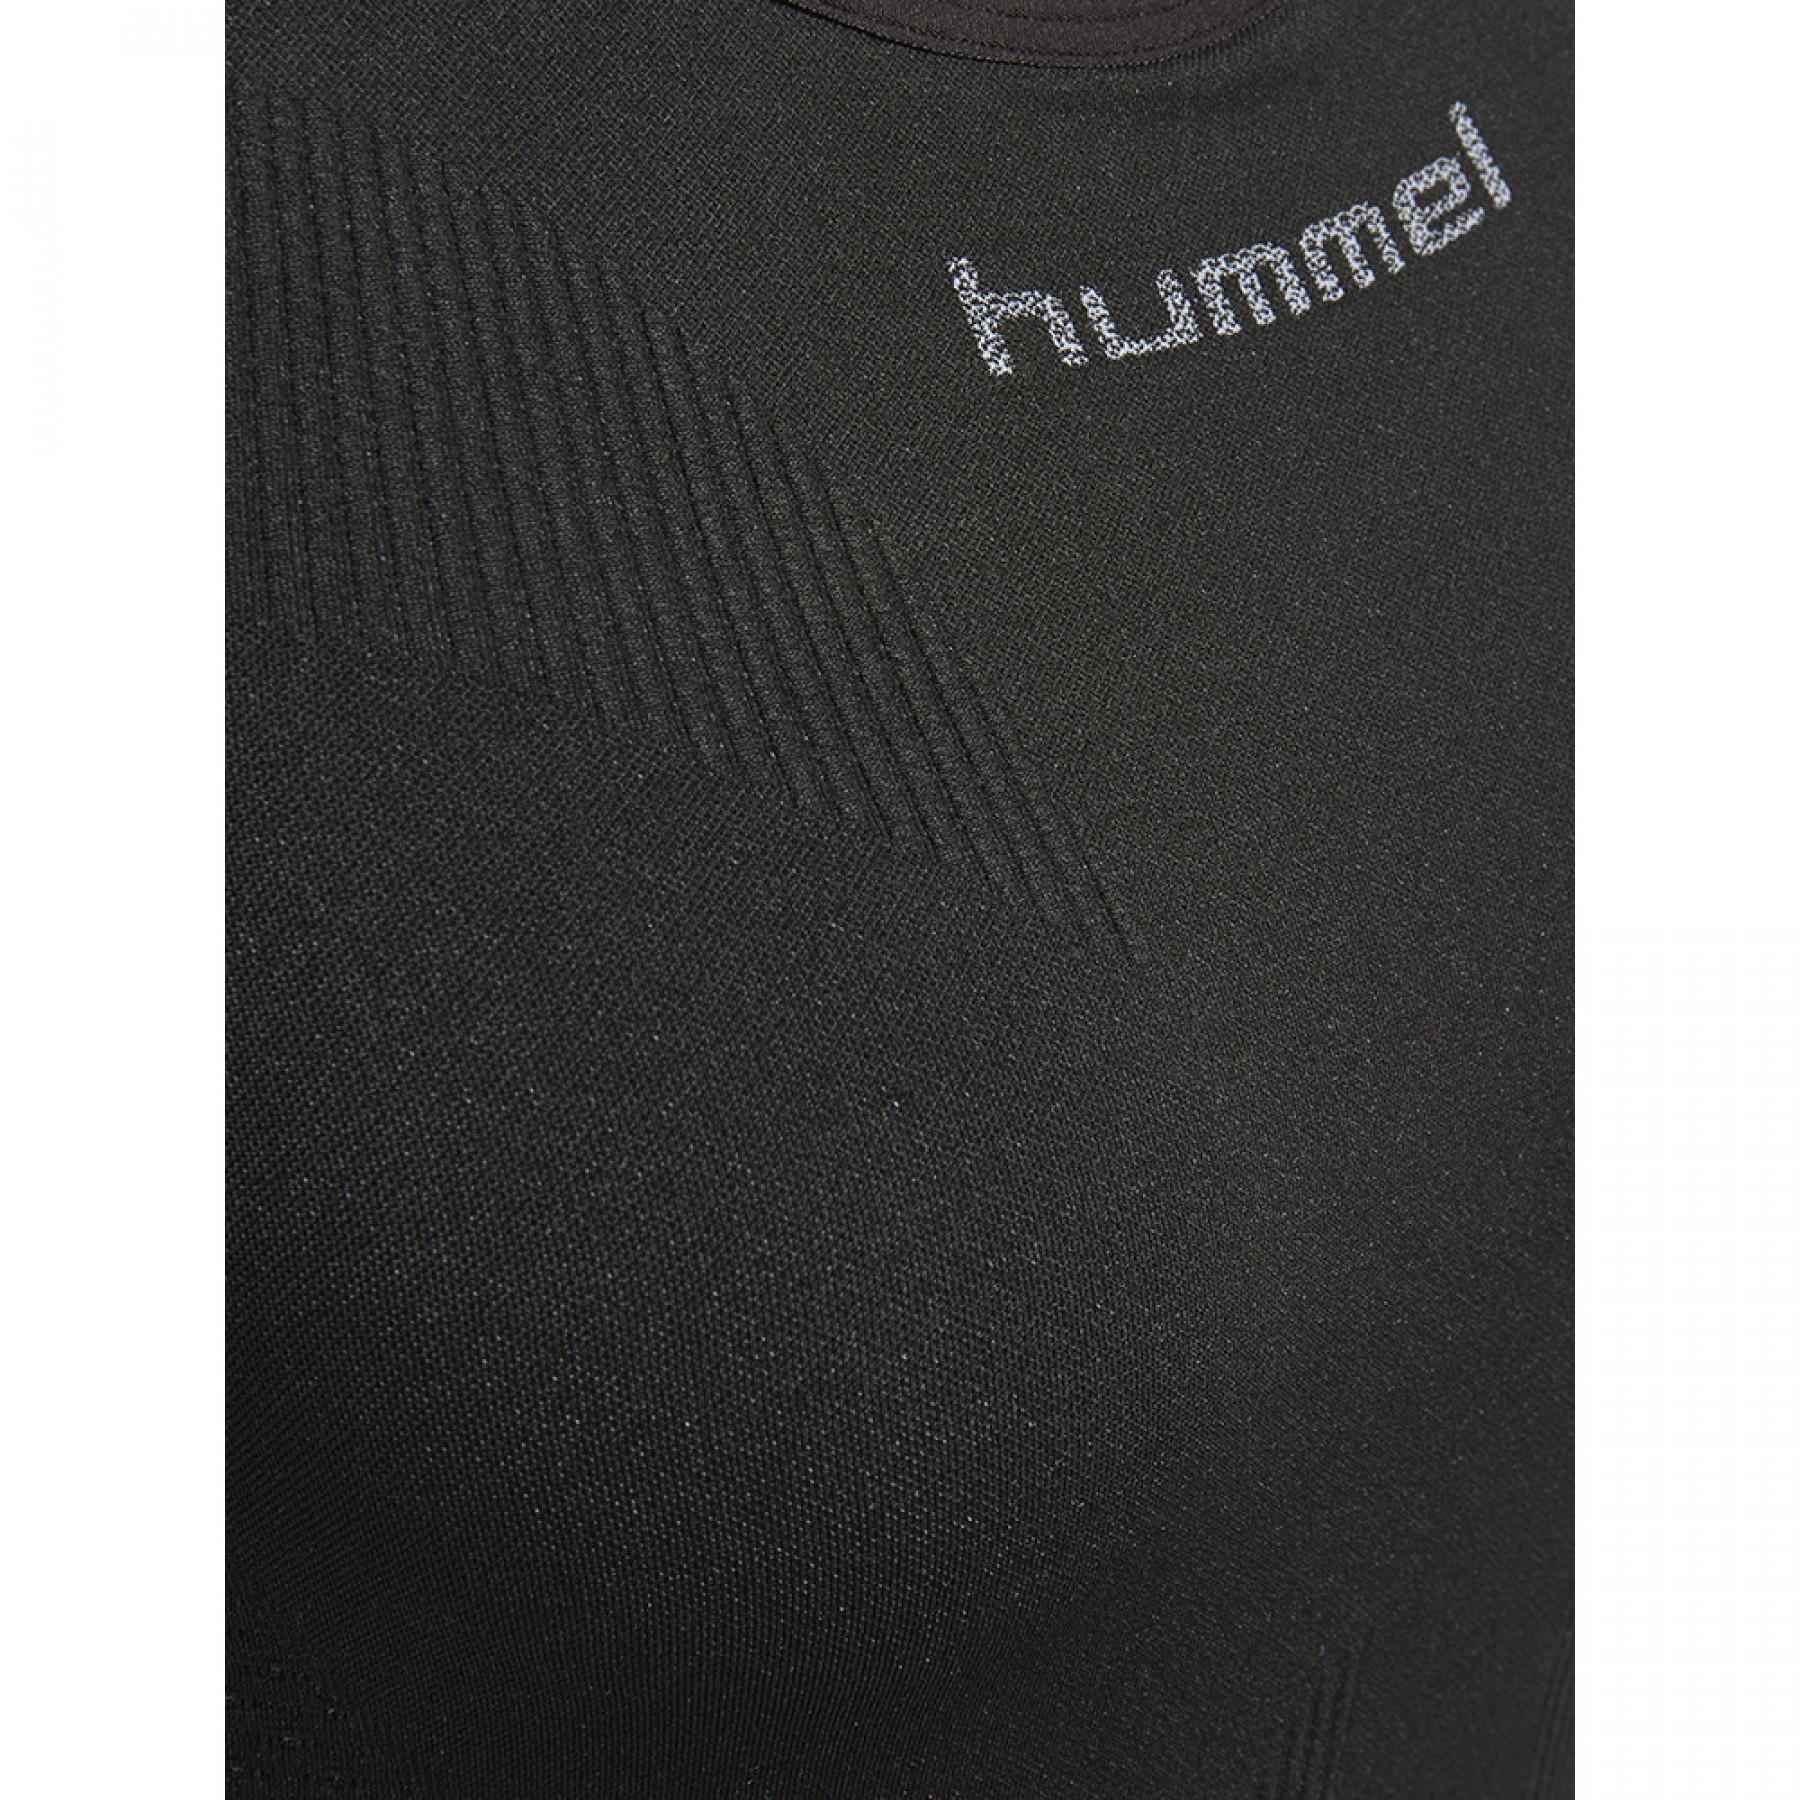 Camiseta de tirantes para mujer Hummel first comfort hmlPRO